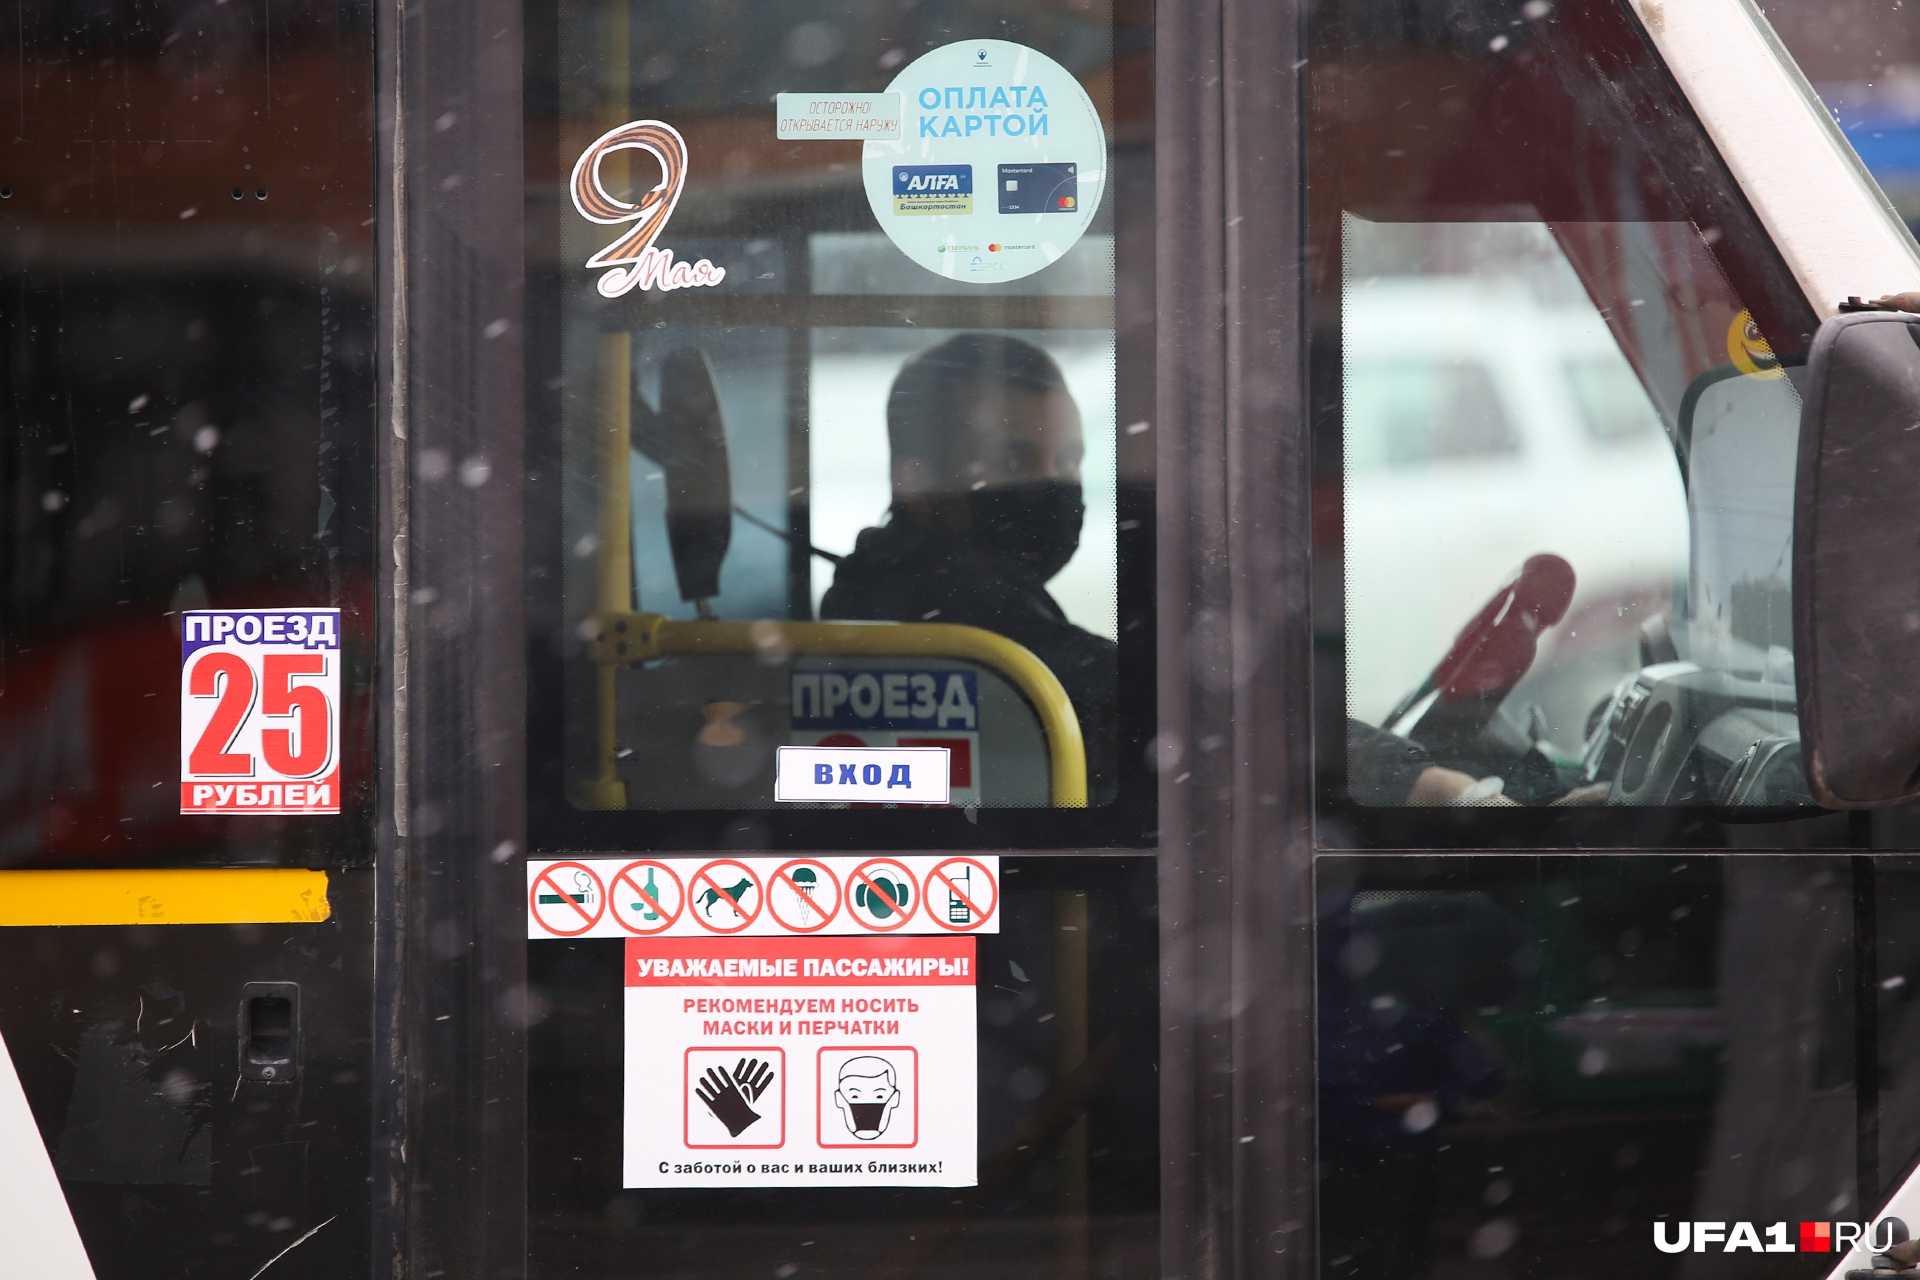 С 29 октября власти Уфы запретили пускать в салон автобуса пассажиров без масок